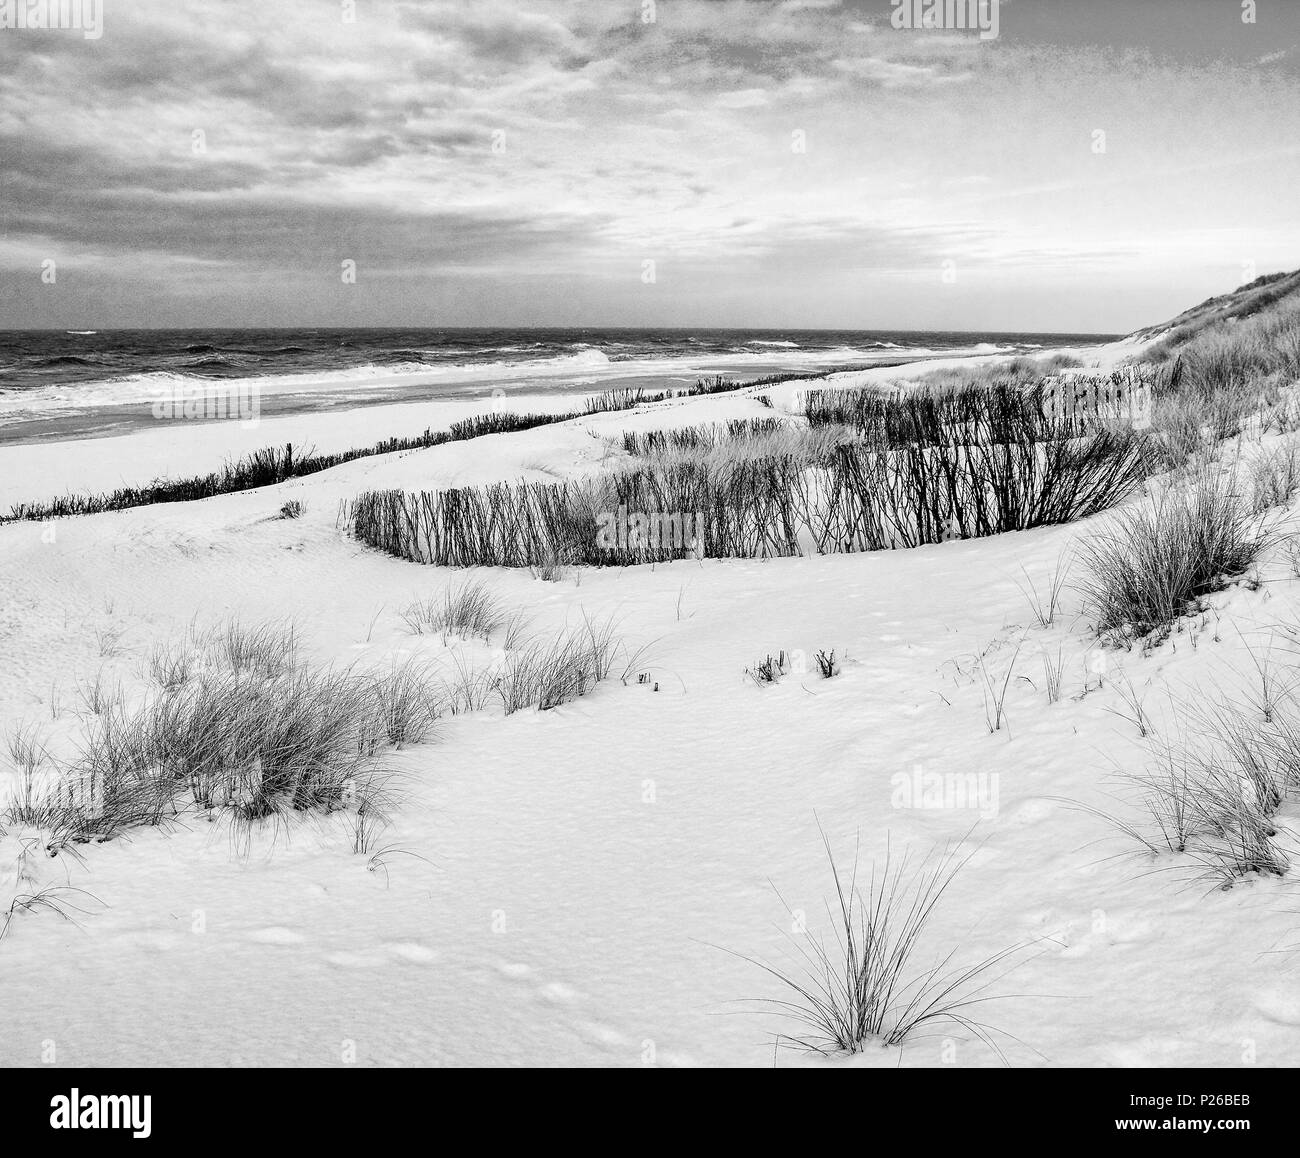 La mer du Nord, île, Sylt, scène d'hiver Banque D'Images